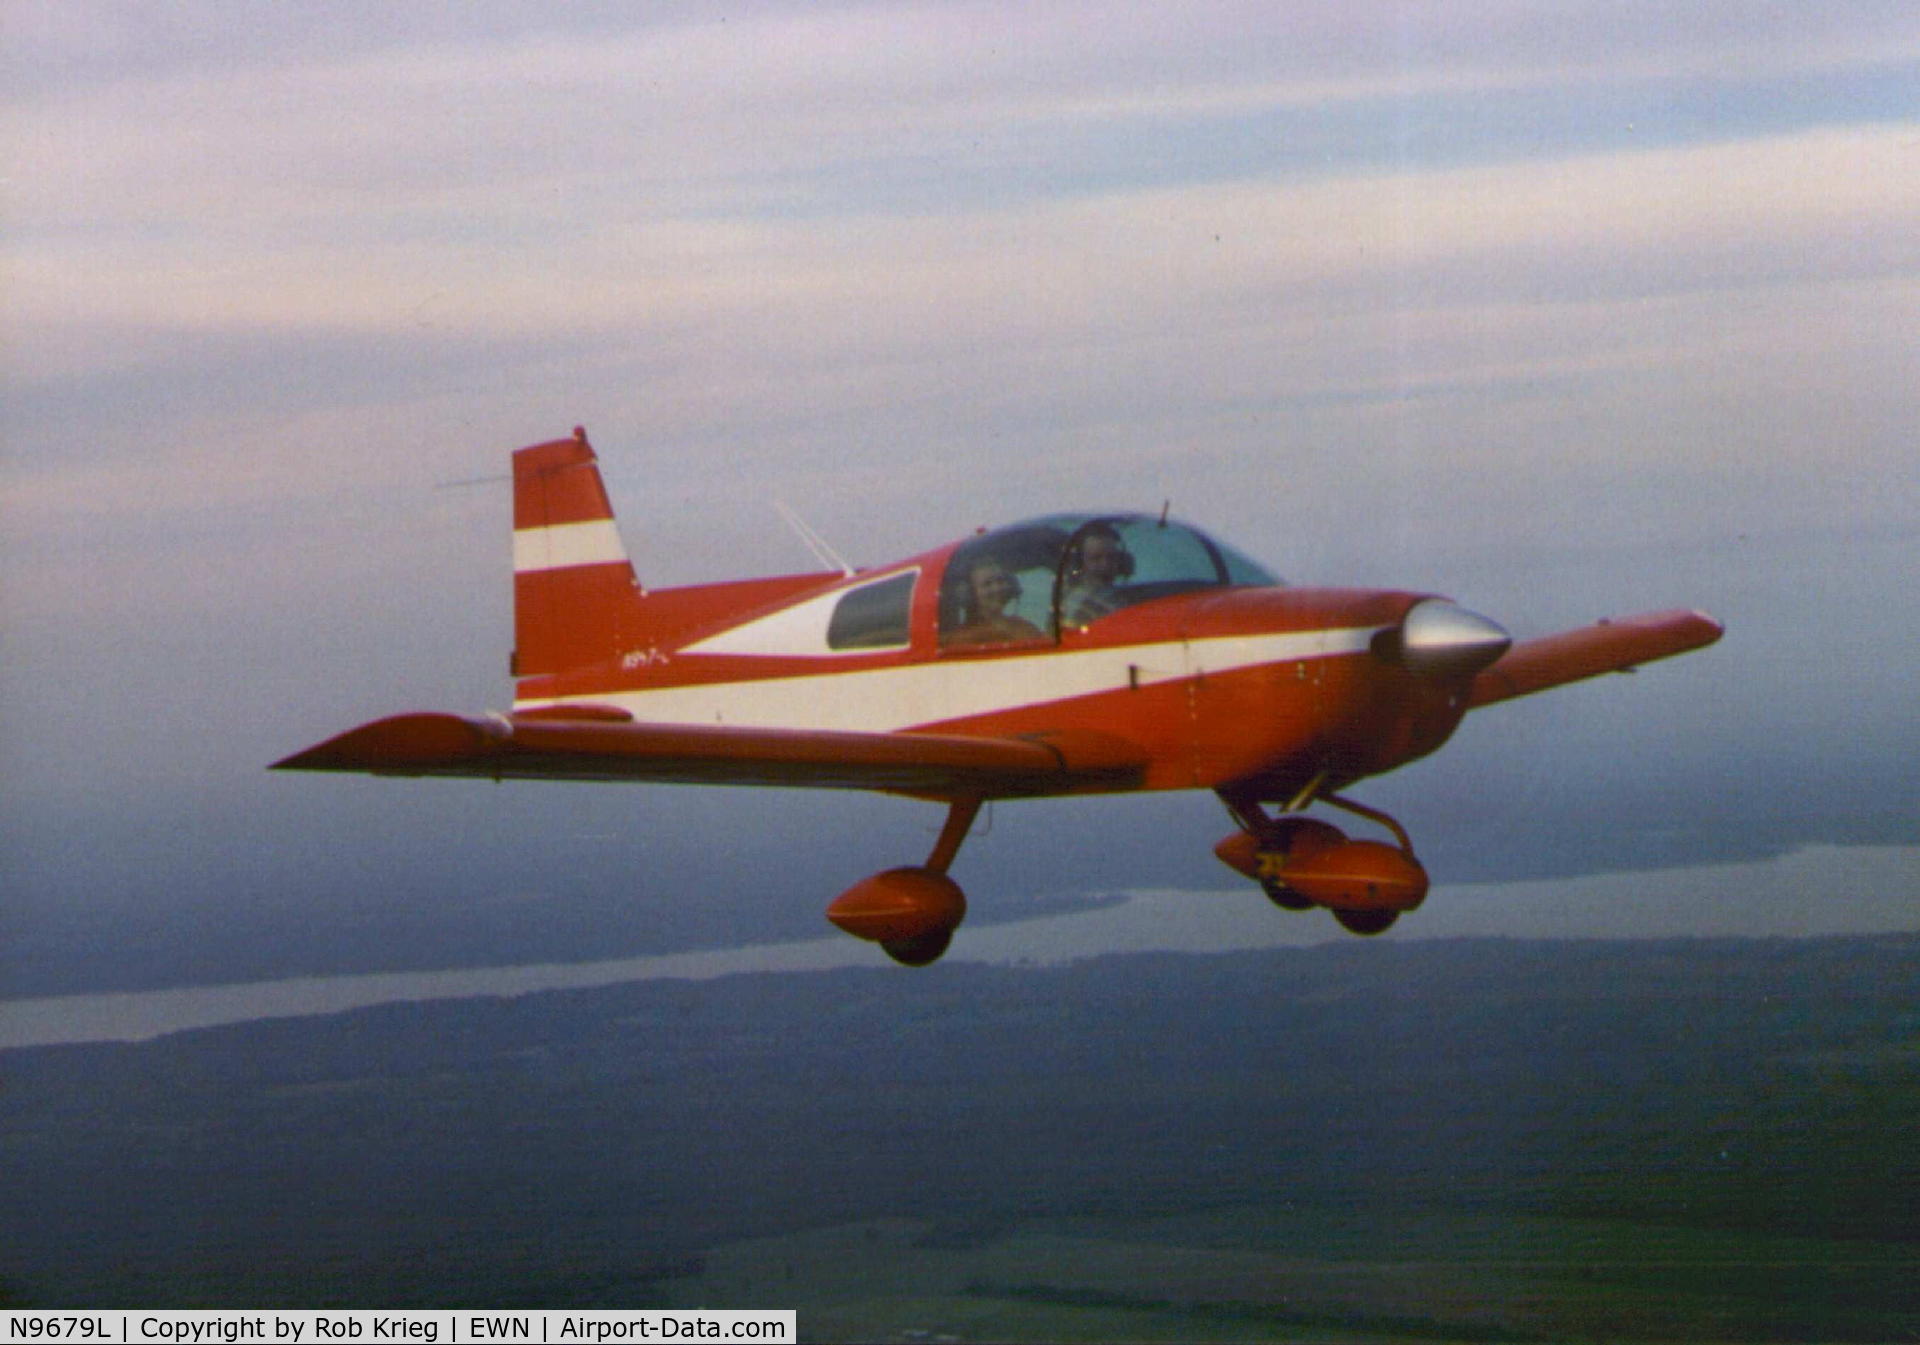 N9679L, 1973 Grumman American AA-1B Trainer C/N AA1B-0179, N9679L over New Bern, NC